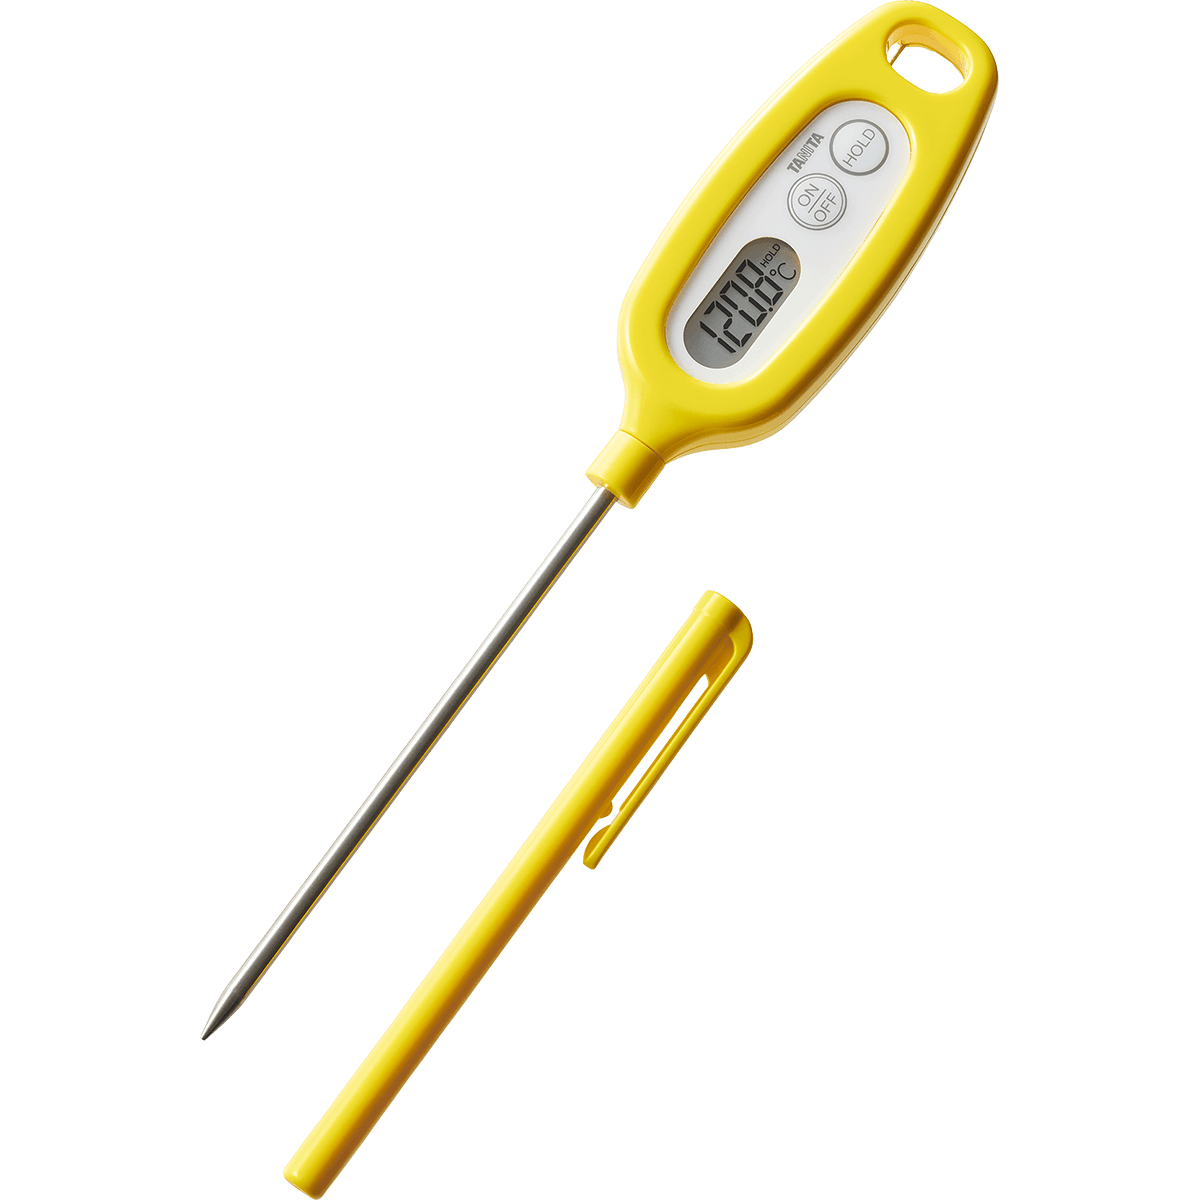 タニタ デジタル温度計 料理用スティック温度計 TT-508N デジタル 料理 おしゃれ 丸洗い 温度計